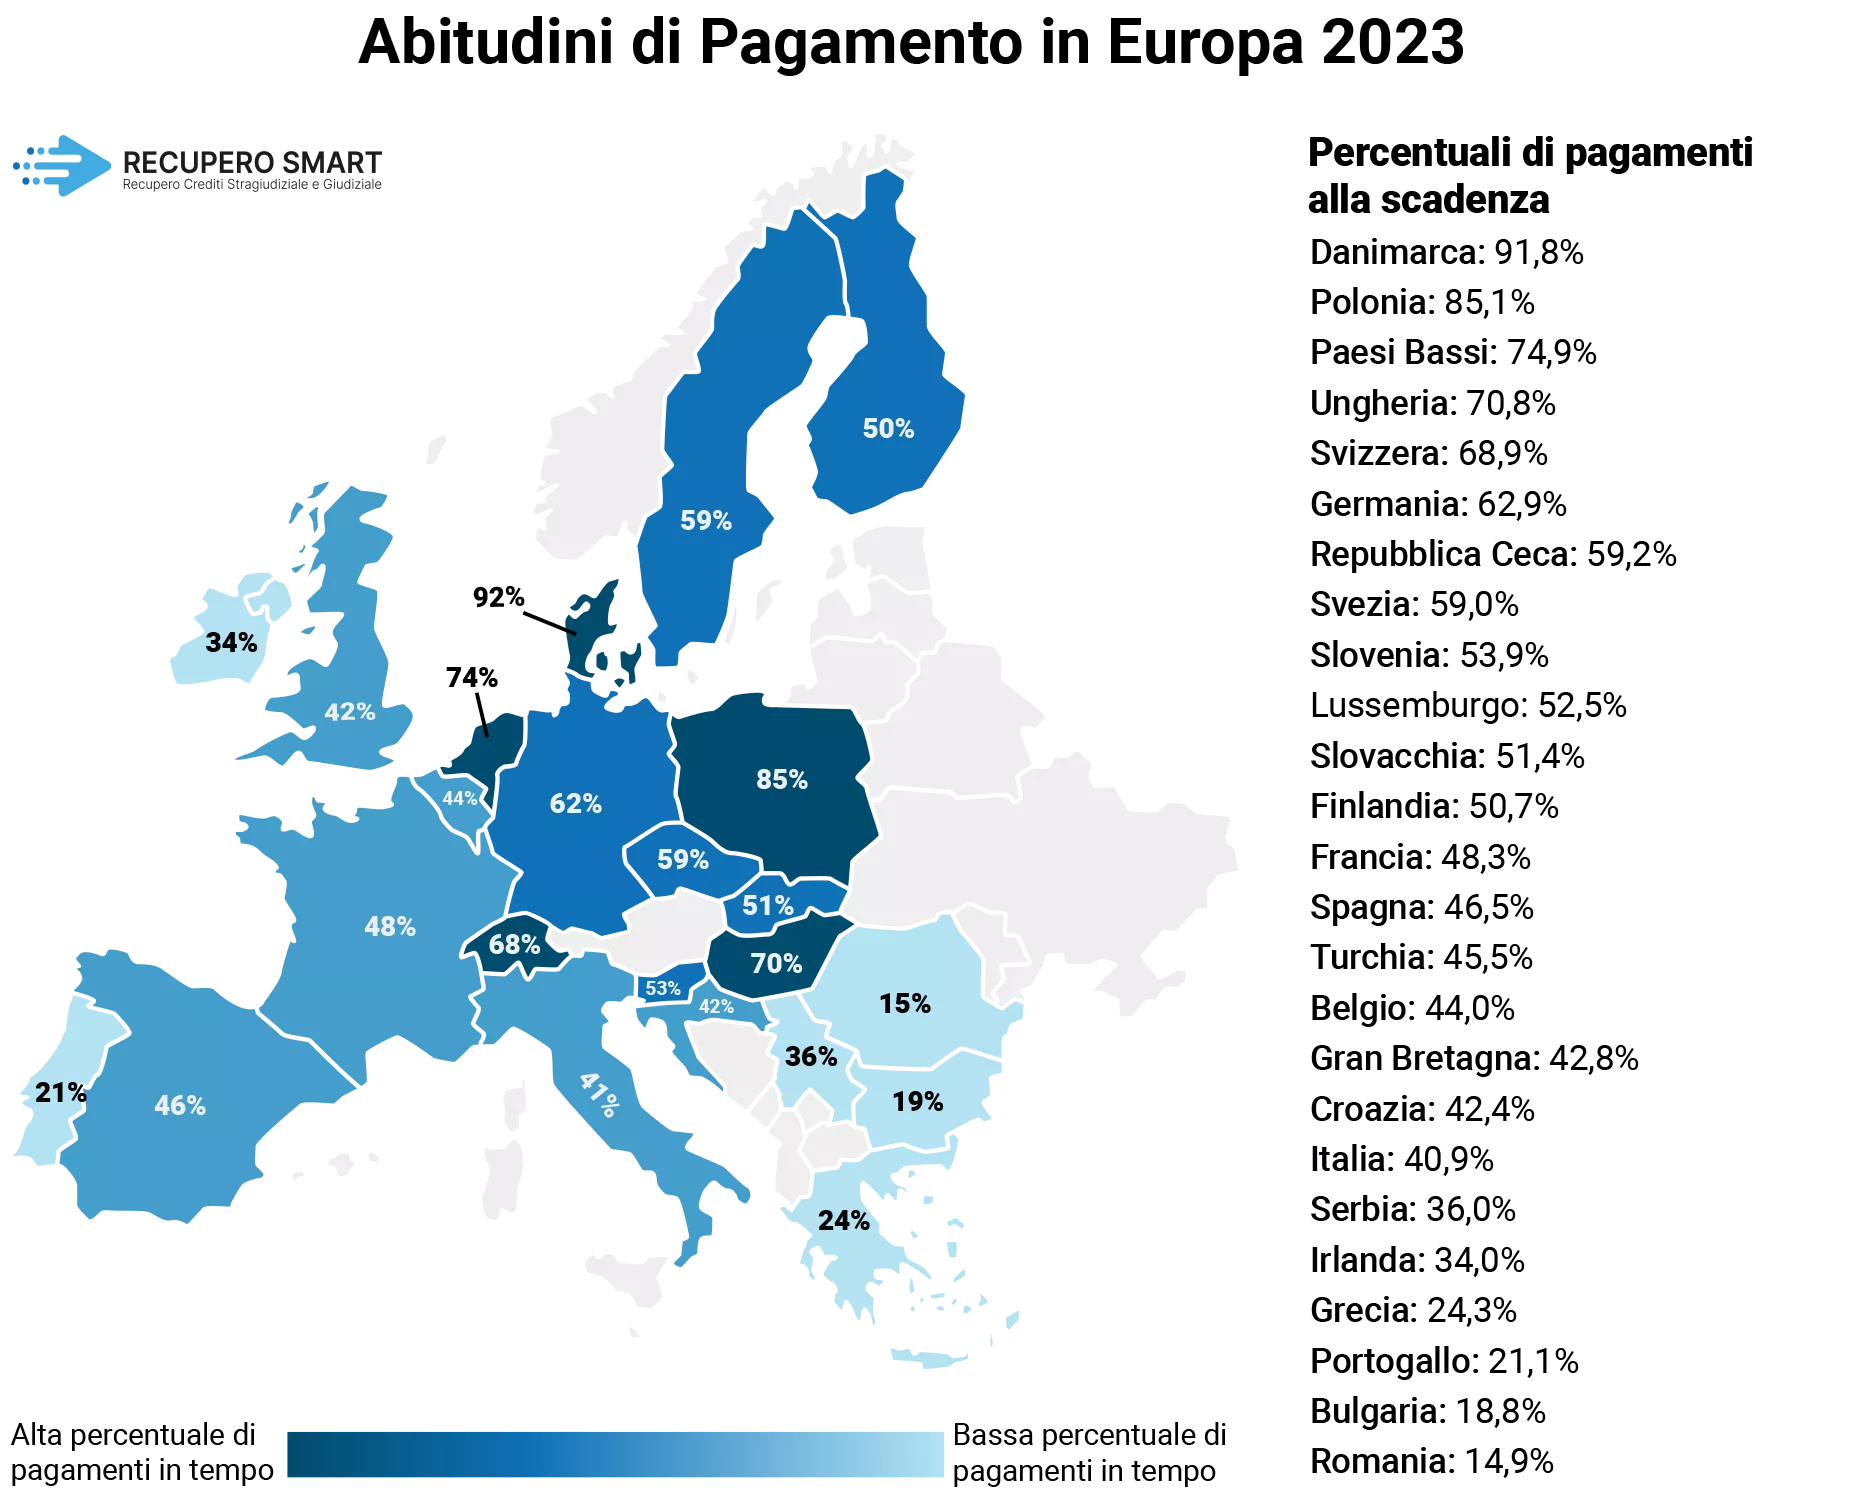 Abitudini di pagamento in Europa nel 2023 mappa e elenco regioni - Recupero Crediti - Recupero Smart